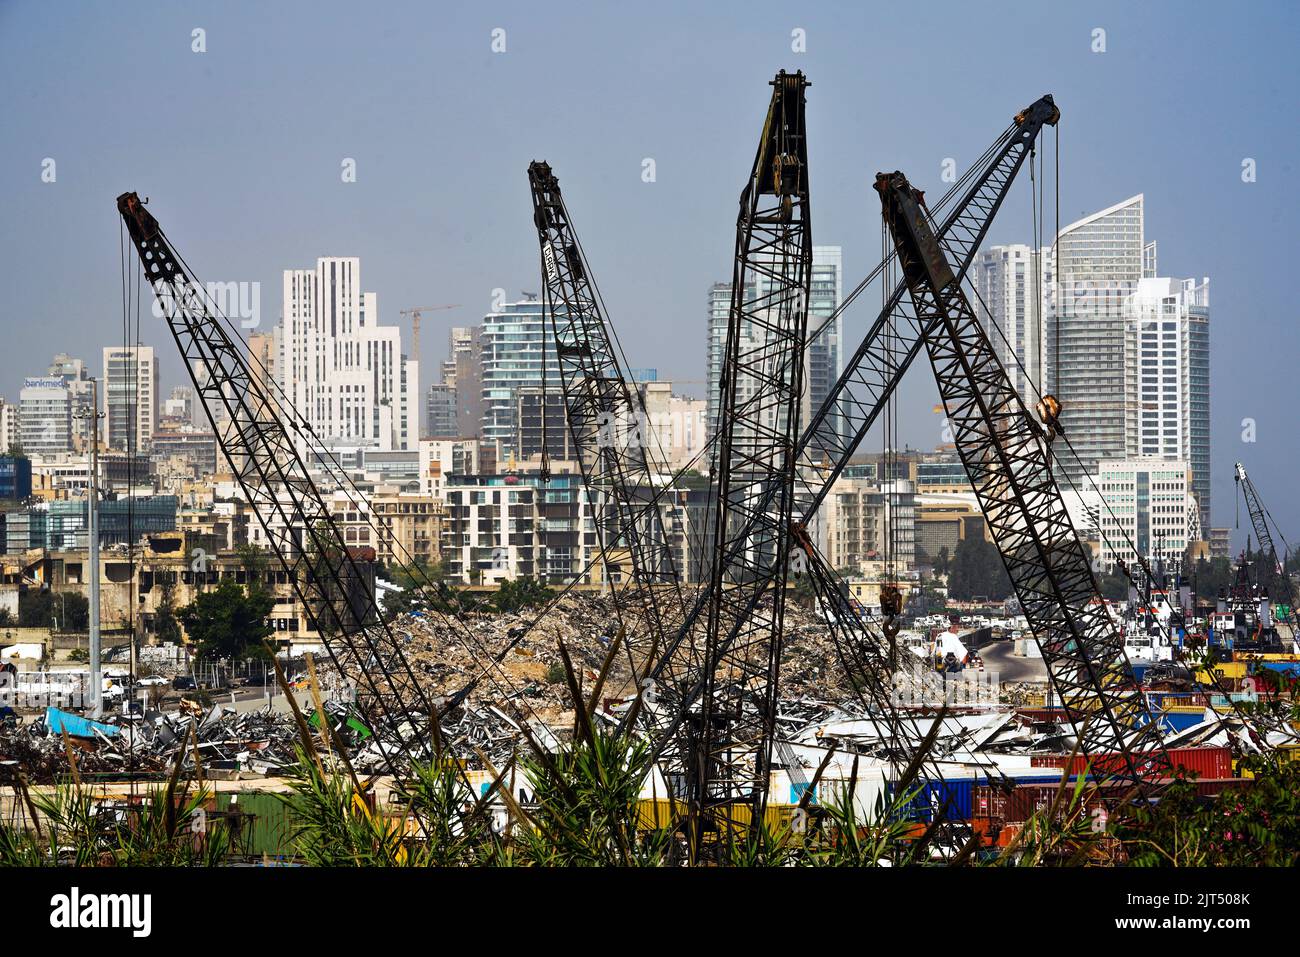 Beirut, Líbano: Los rascacielos del moderno centro de Beirut se pueden ver detrás de las grúas y los escombros de la explosión masiva que devastó 2.750 toneladas de nitrato de amonio almacenadas en el puerto de la ciudad el 8/4/2020 Foto de stock